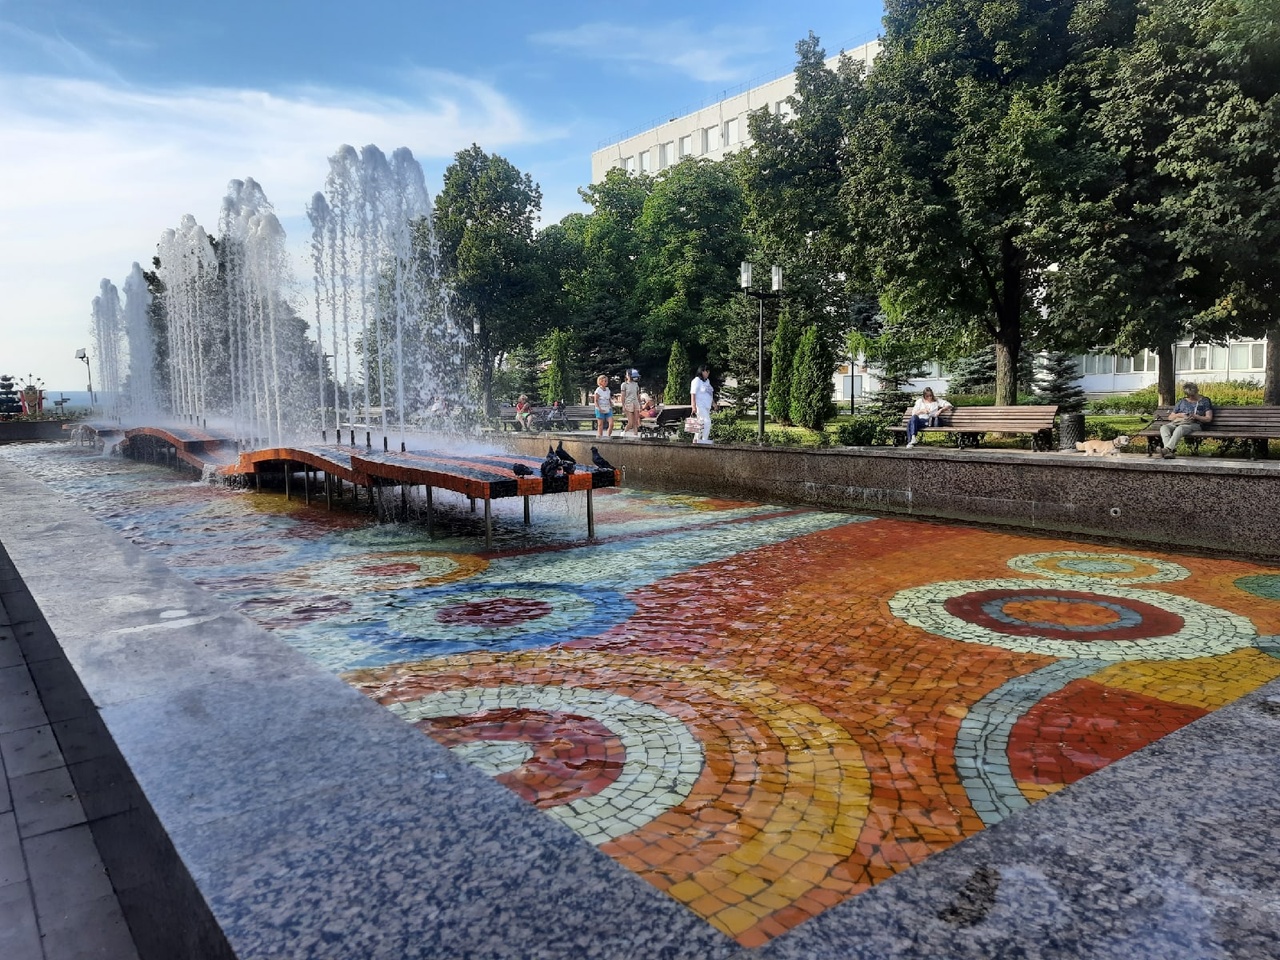  Список участков для установки новых фонтанов сформируют в Самаре 